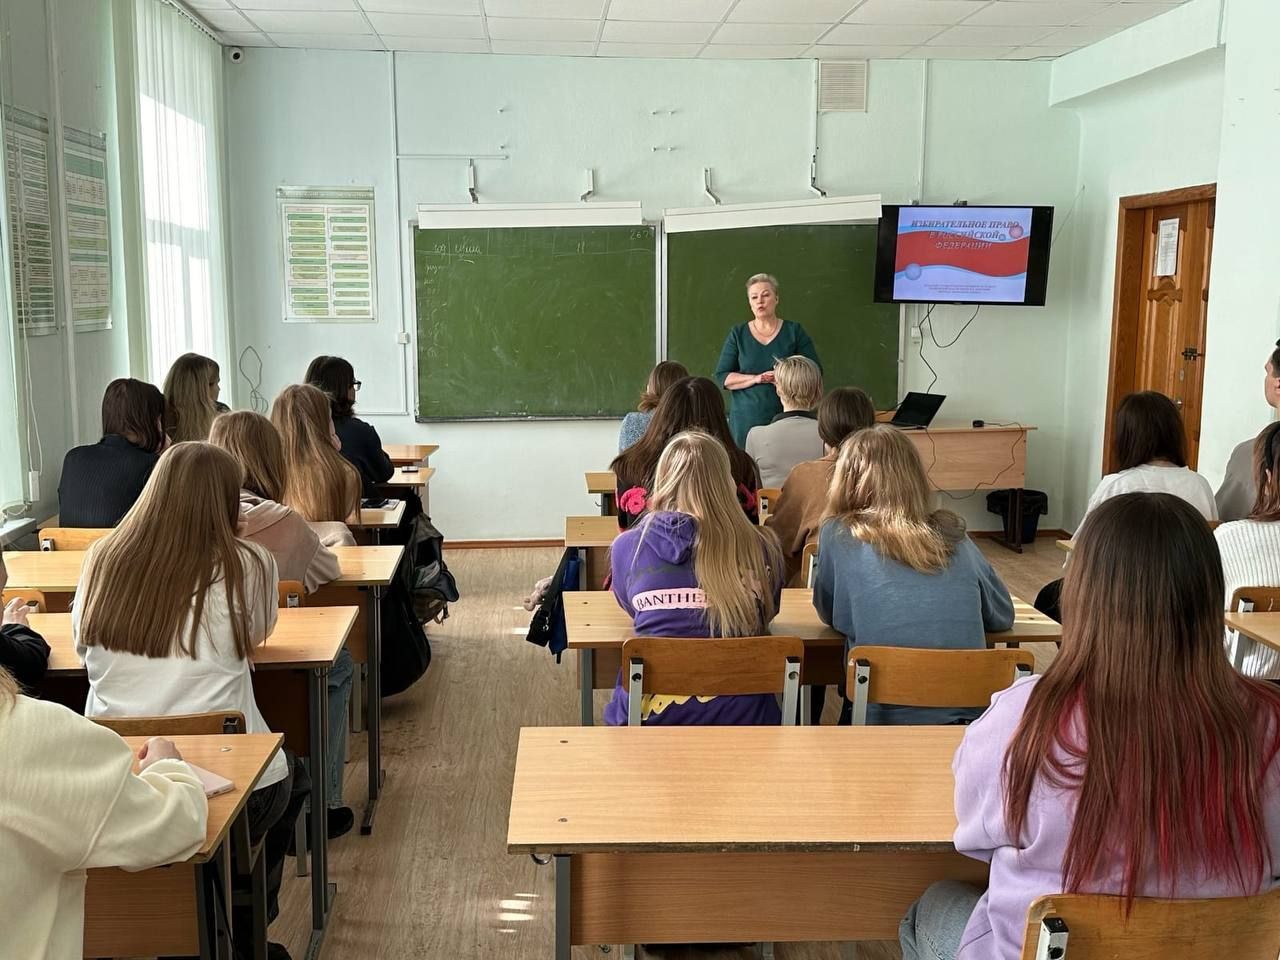 Ульяновские юристы продолжают проводить уроки права для школьников и студентов